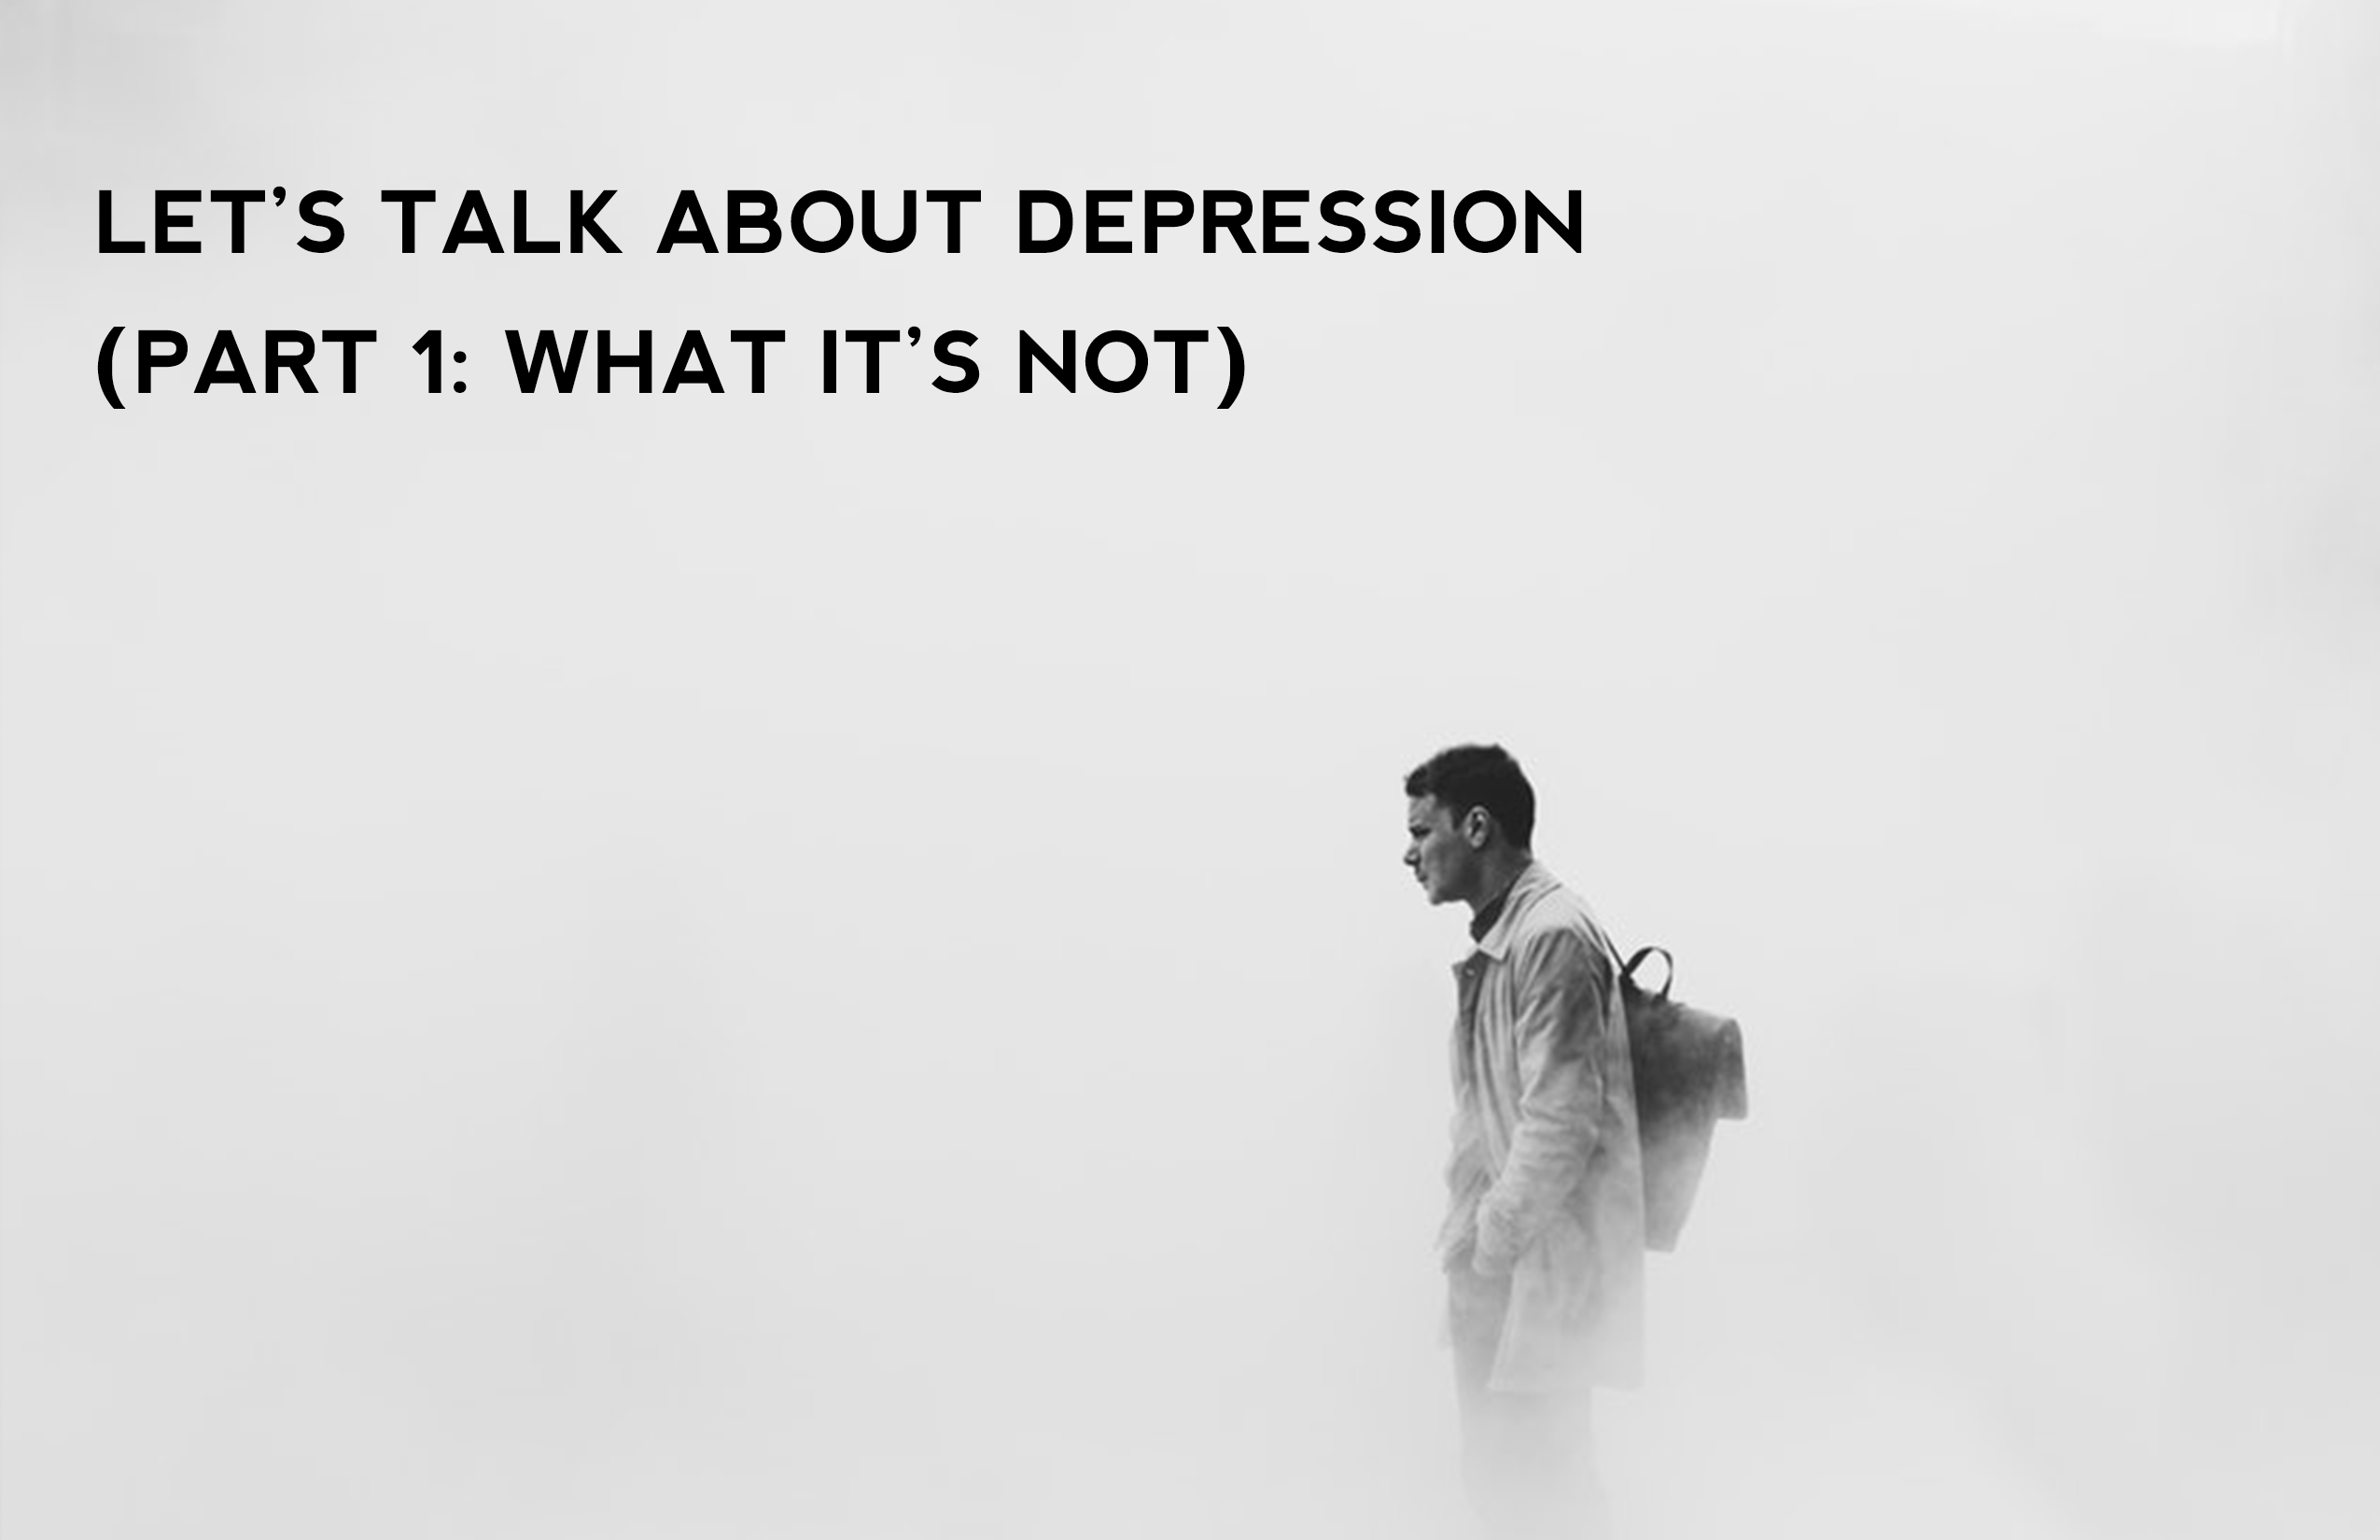 Let’s talk about depression: part 1